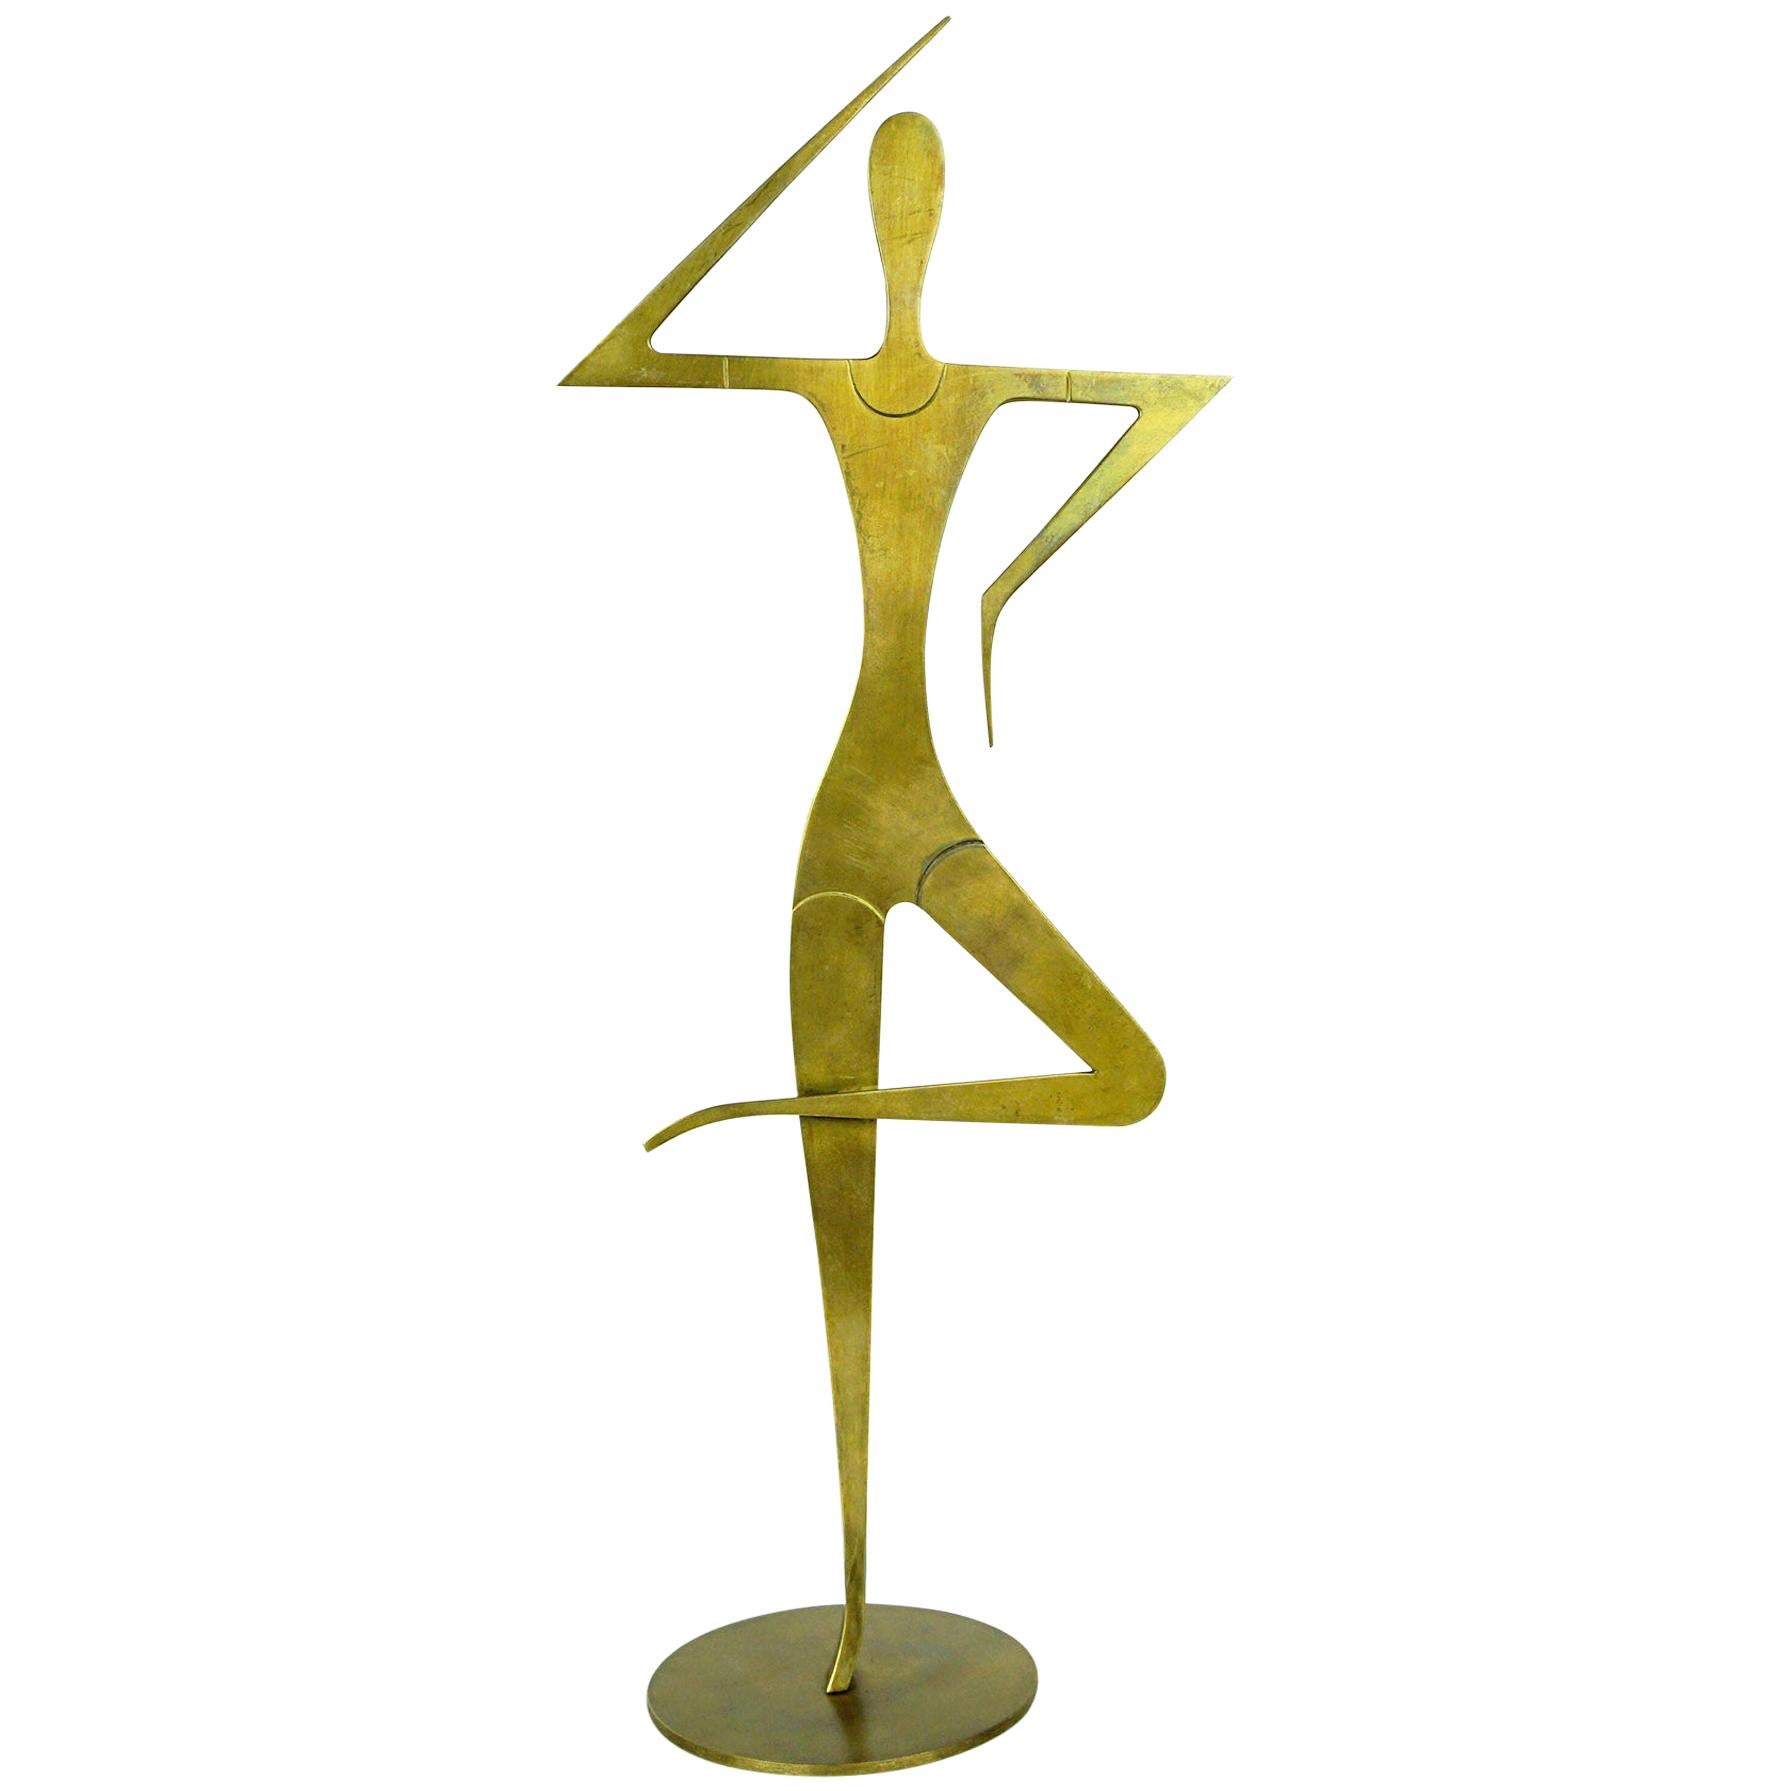 Austrian Midcentury Brass Female Gymnast Sculpture by Franz Hagenauer